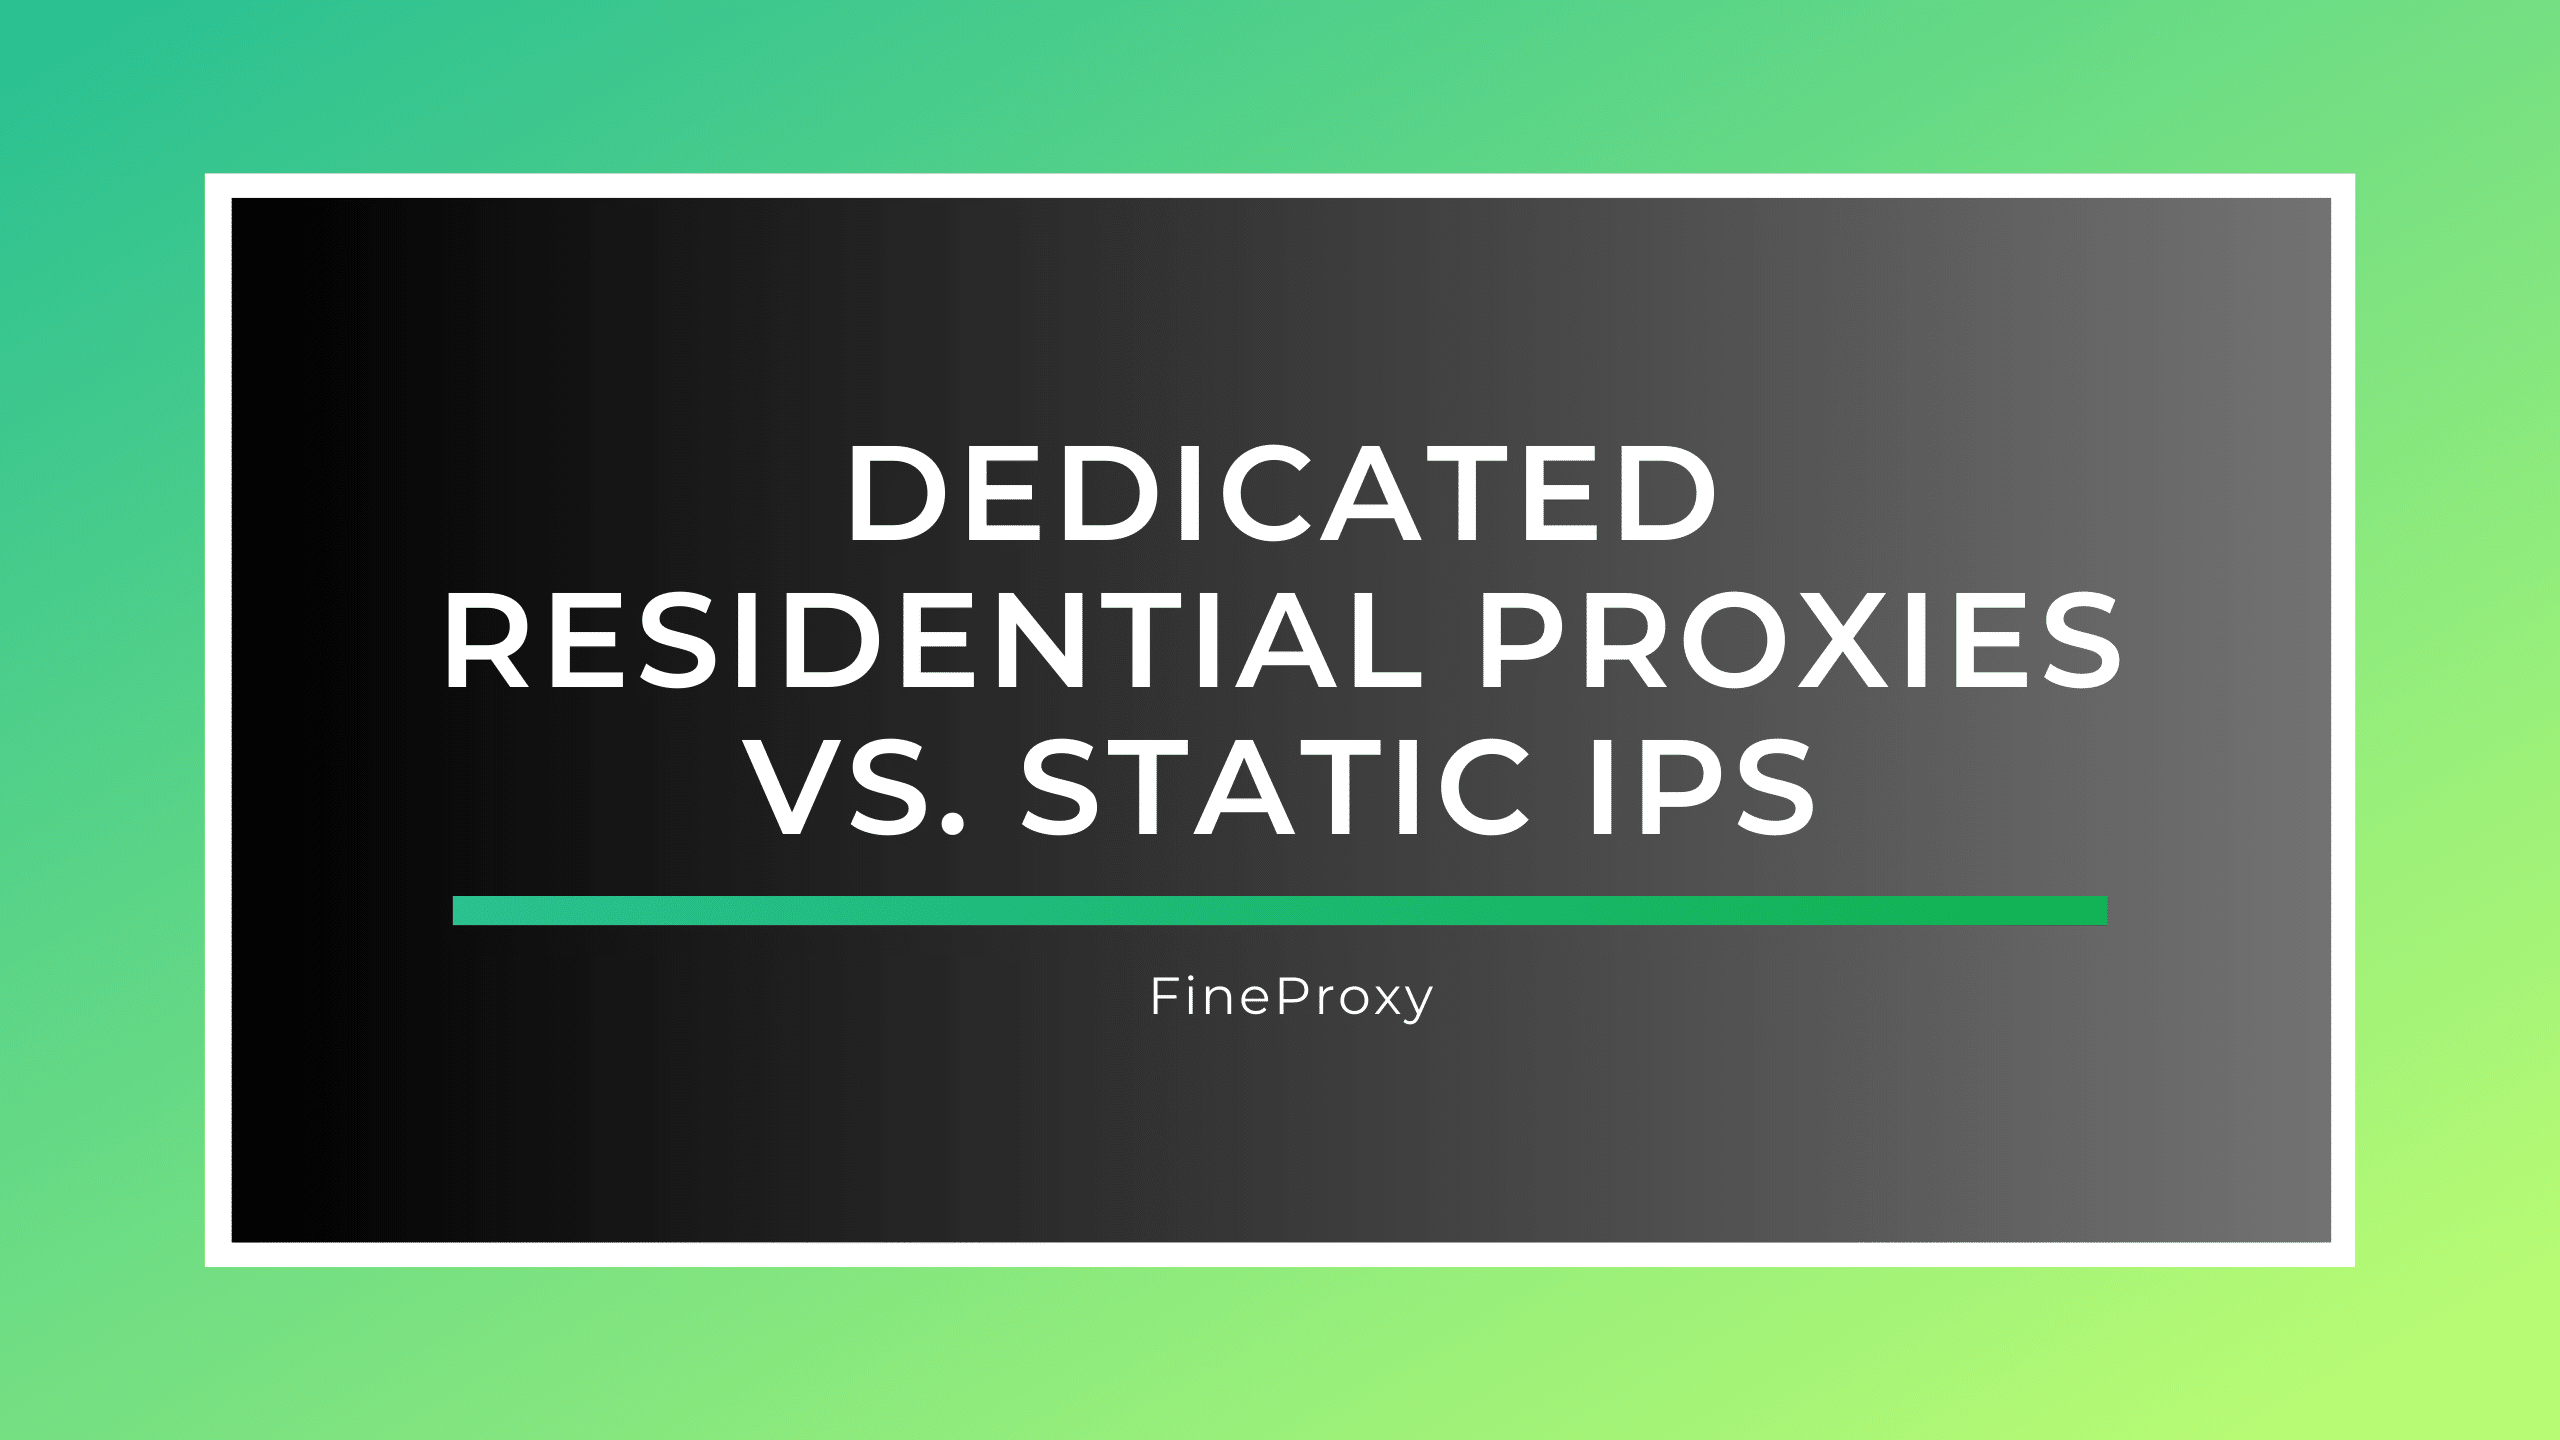 Proxies residenciais dedicados versus IPs estáticos